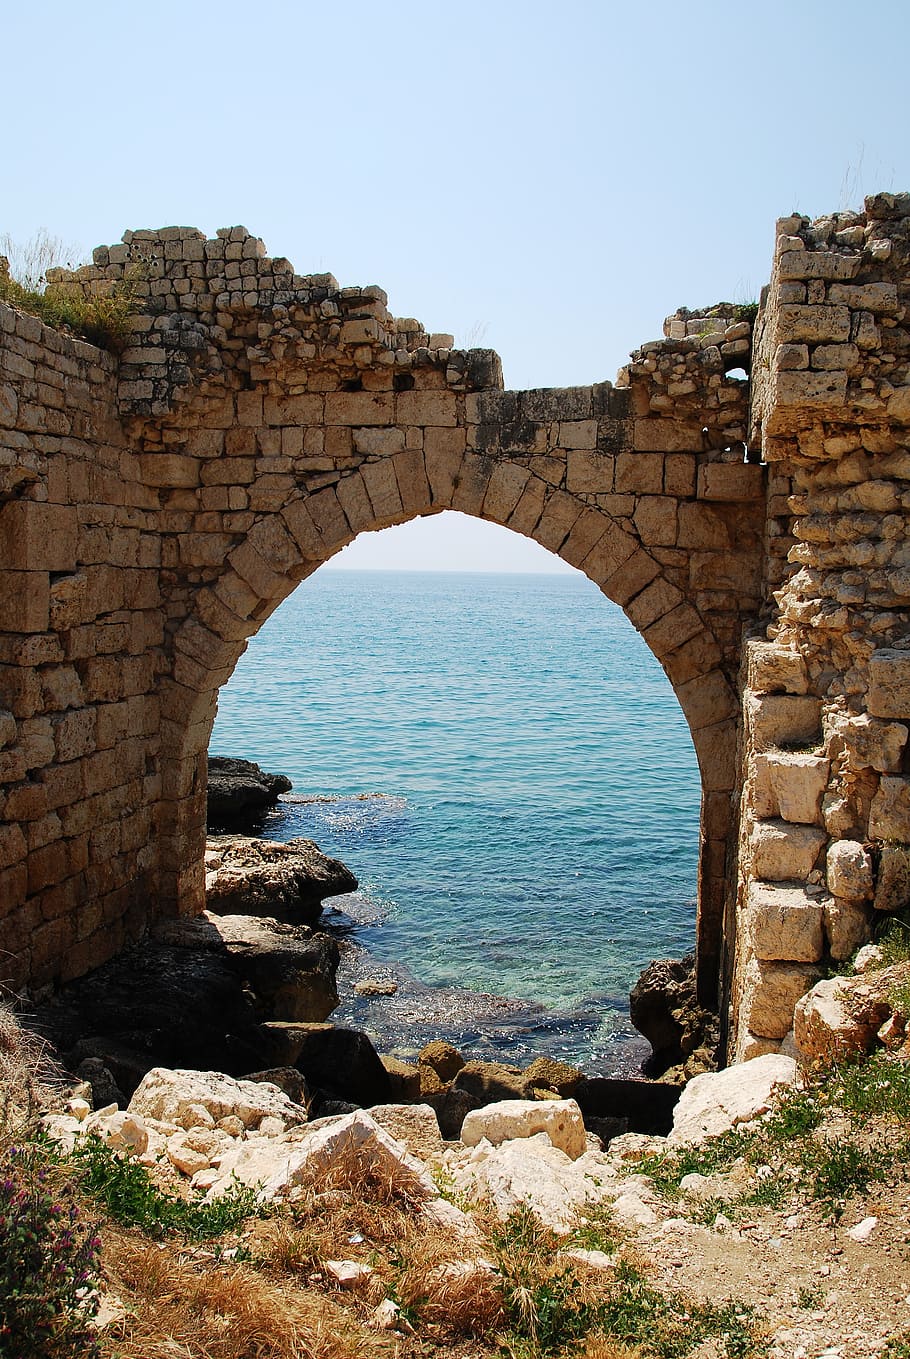 arch-shape bricks gate, seashore, cape anamur, turkey, archway, sea, castle, wall, old Ruin, architecture